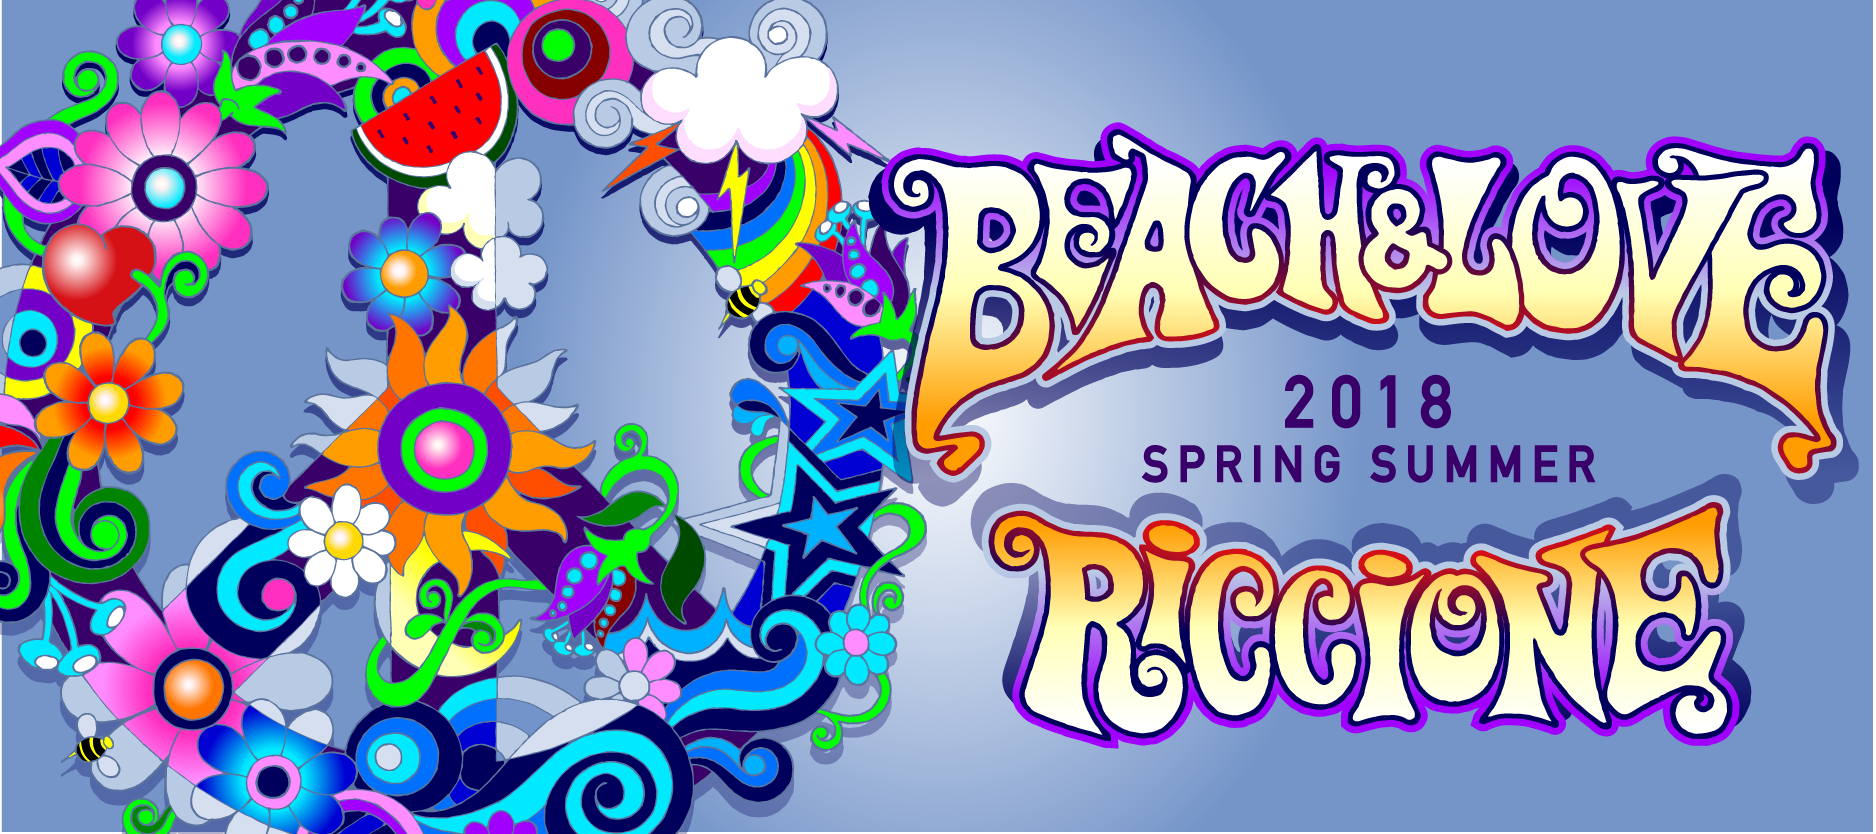 Beach & Love Riccione, gli appuntamenti dal 28 aprile al 1° maggio